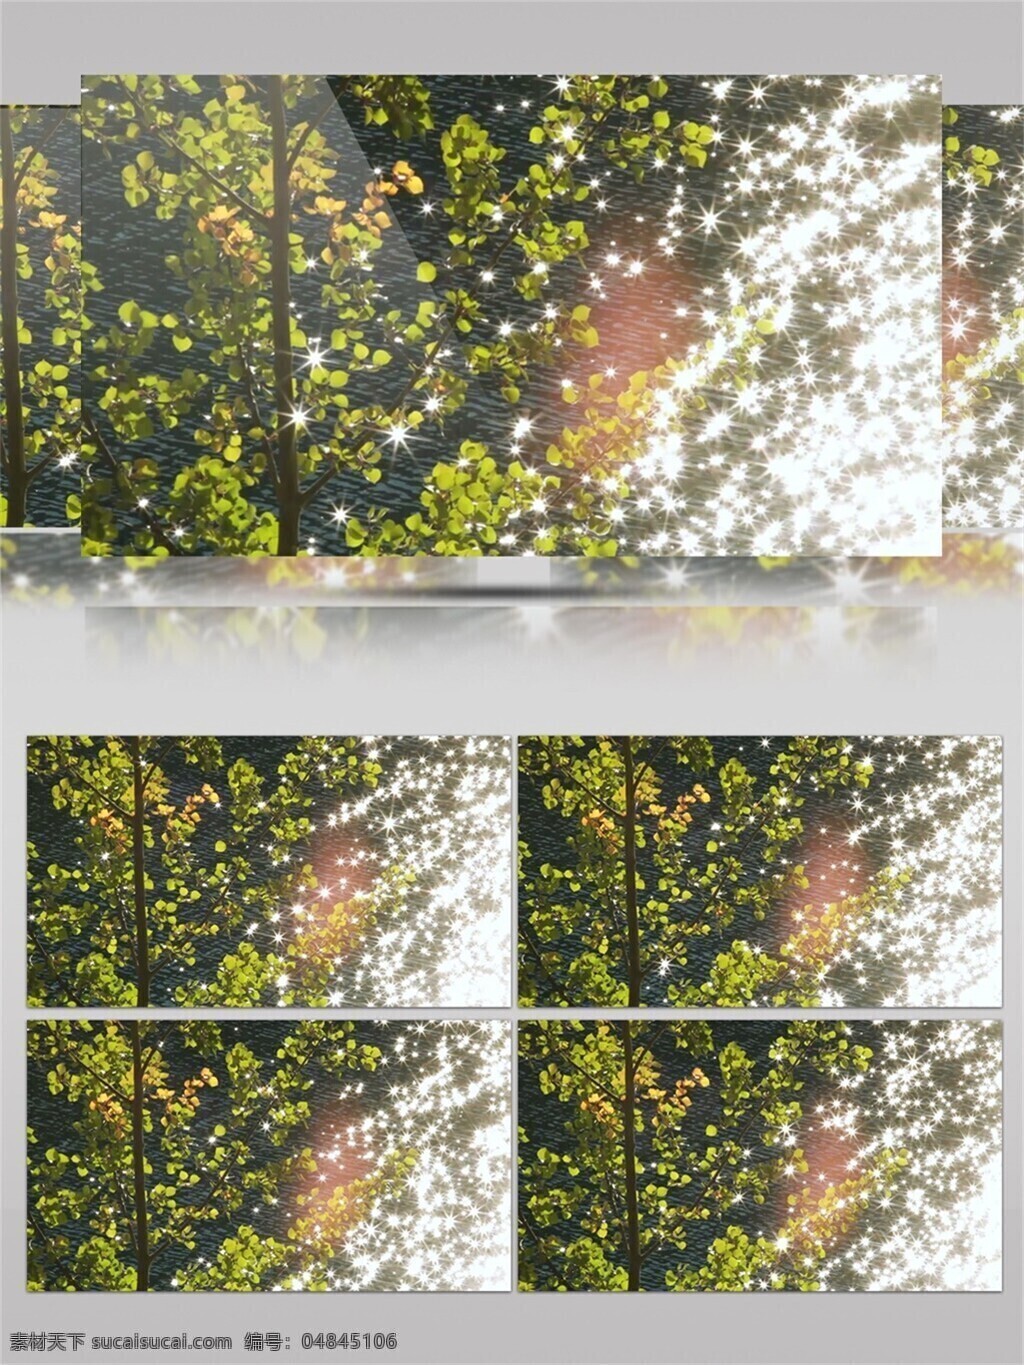 波光粼粼 河面 树叶 视频 唯美 太阳 绿叶 树木 清新 阳光照射 水面 刺眼 空气 环境美丽